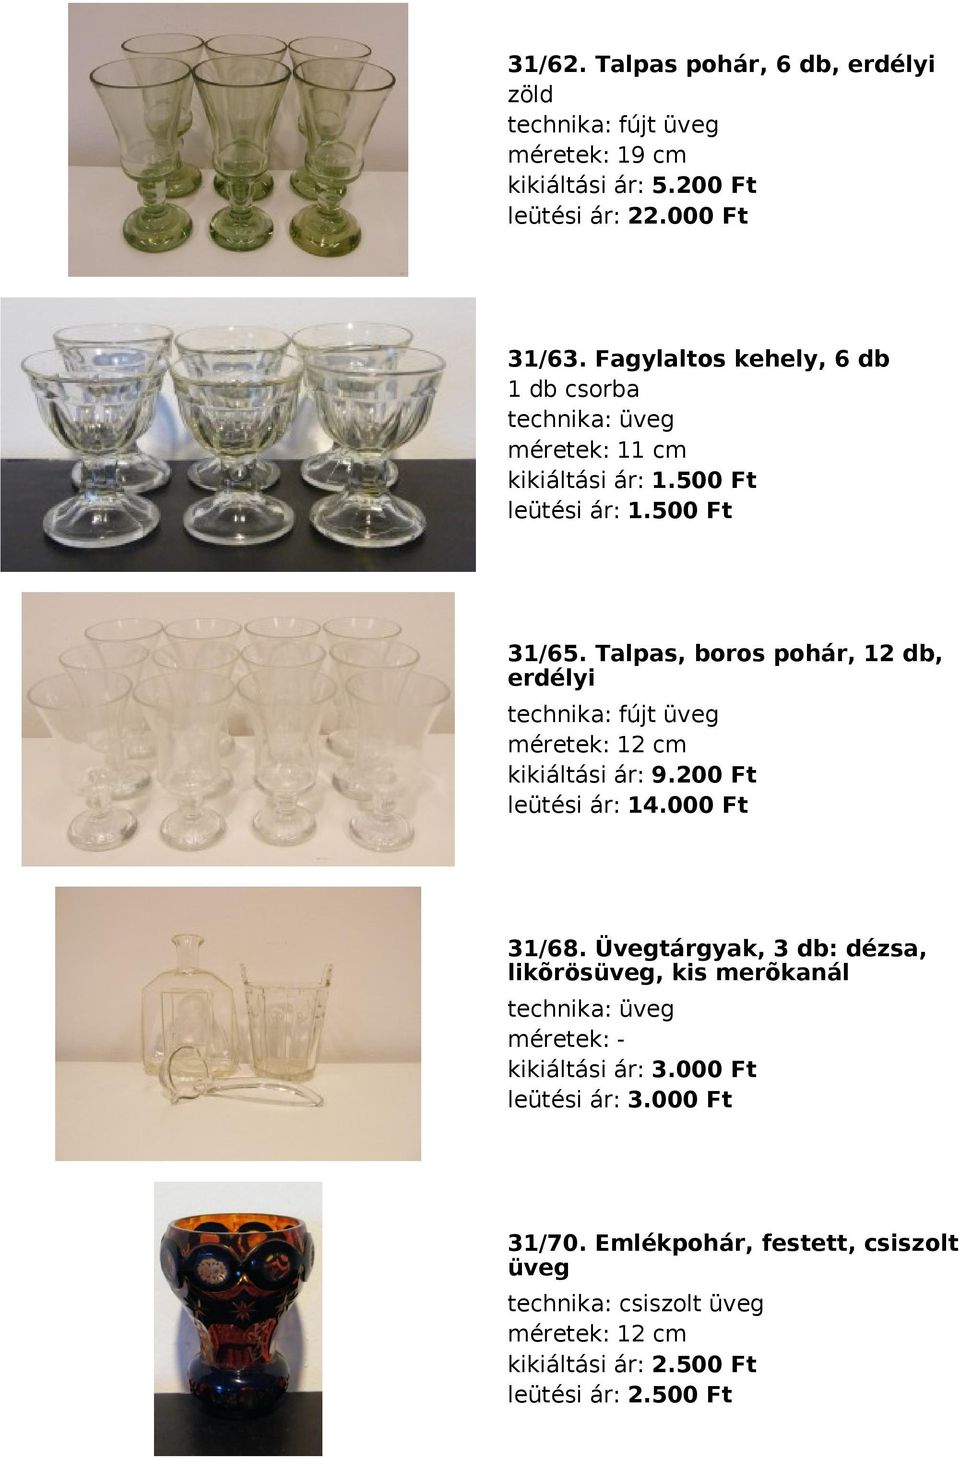 Talpas, boros pohár, 12 db, erdélyi fújt üveg méretek: 12 cm kikiáltási ár: 9.200 Ft leütési ár: 14.000 Ft 31/68.